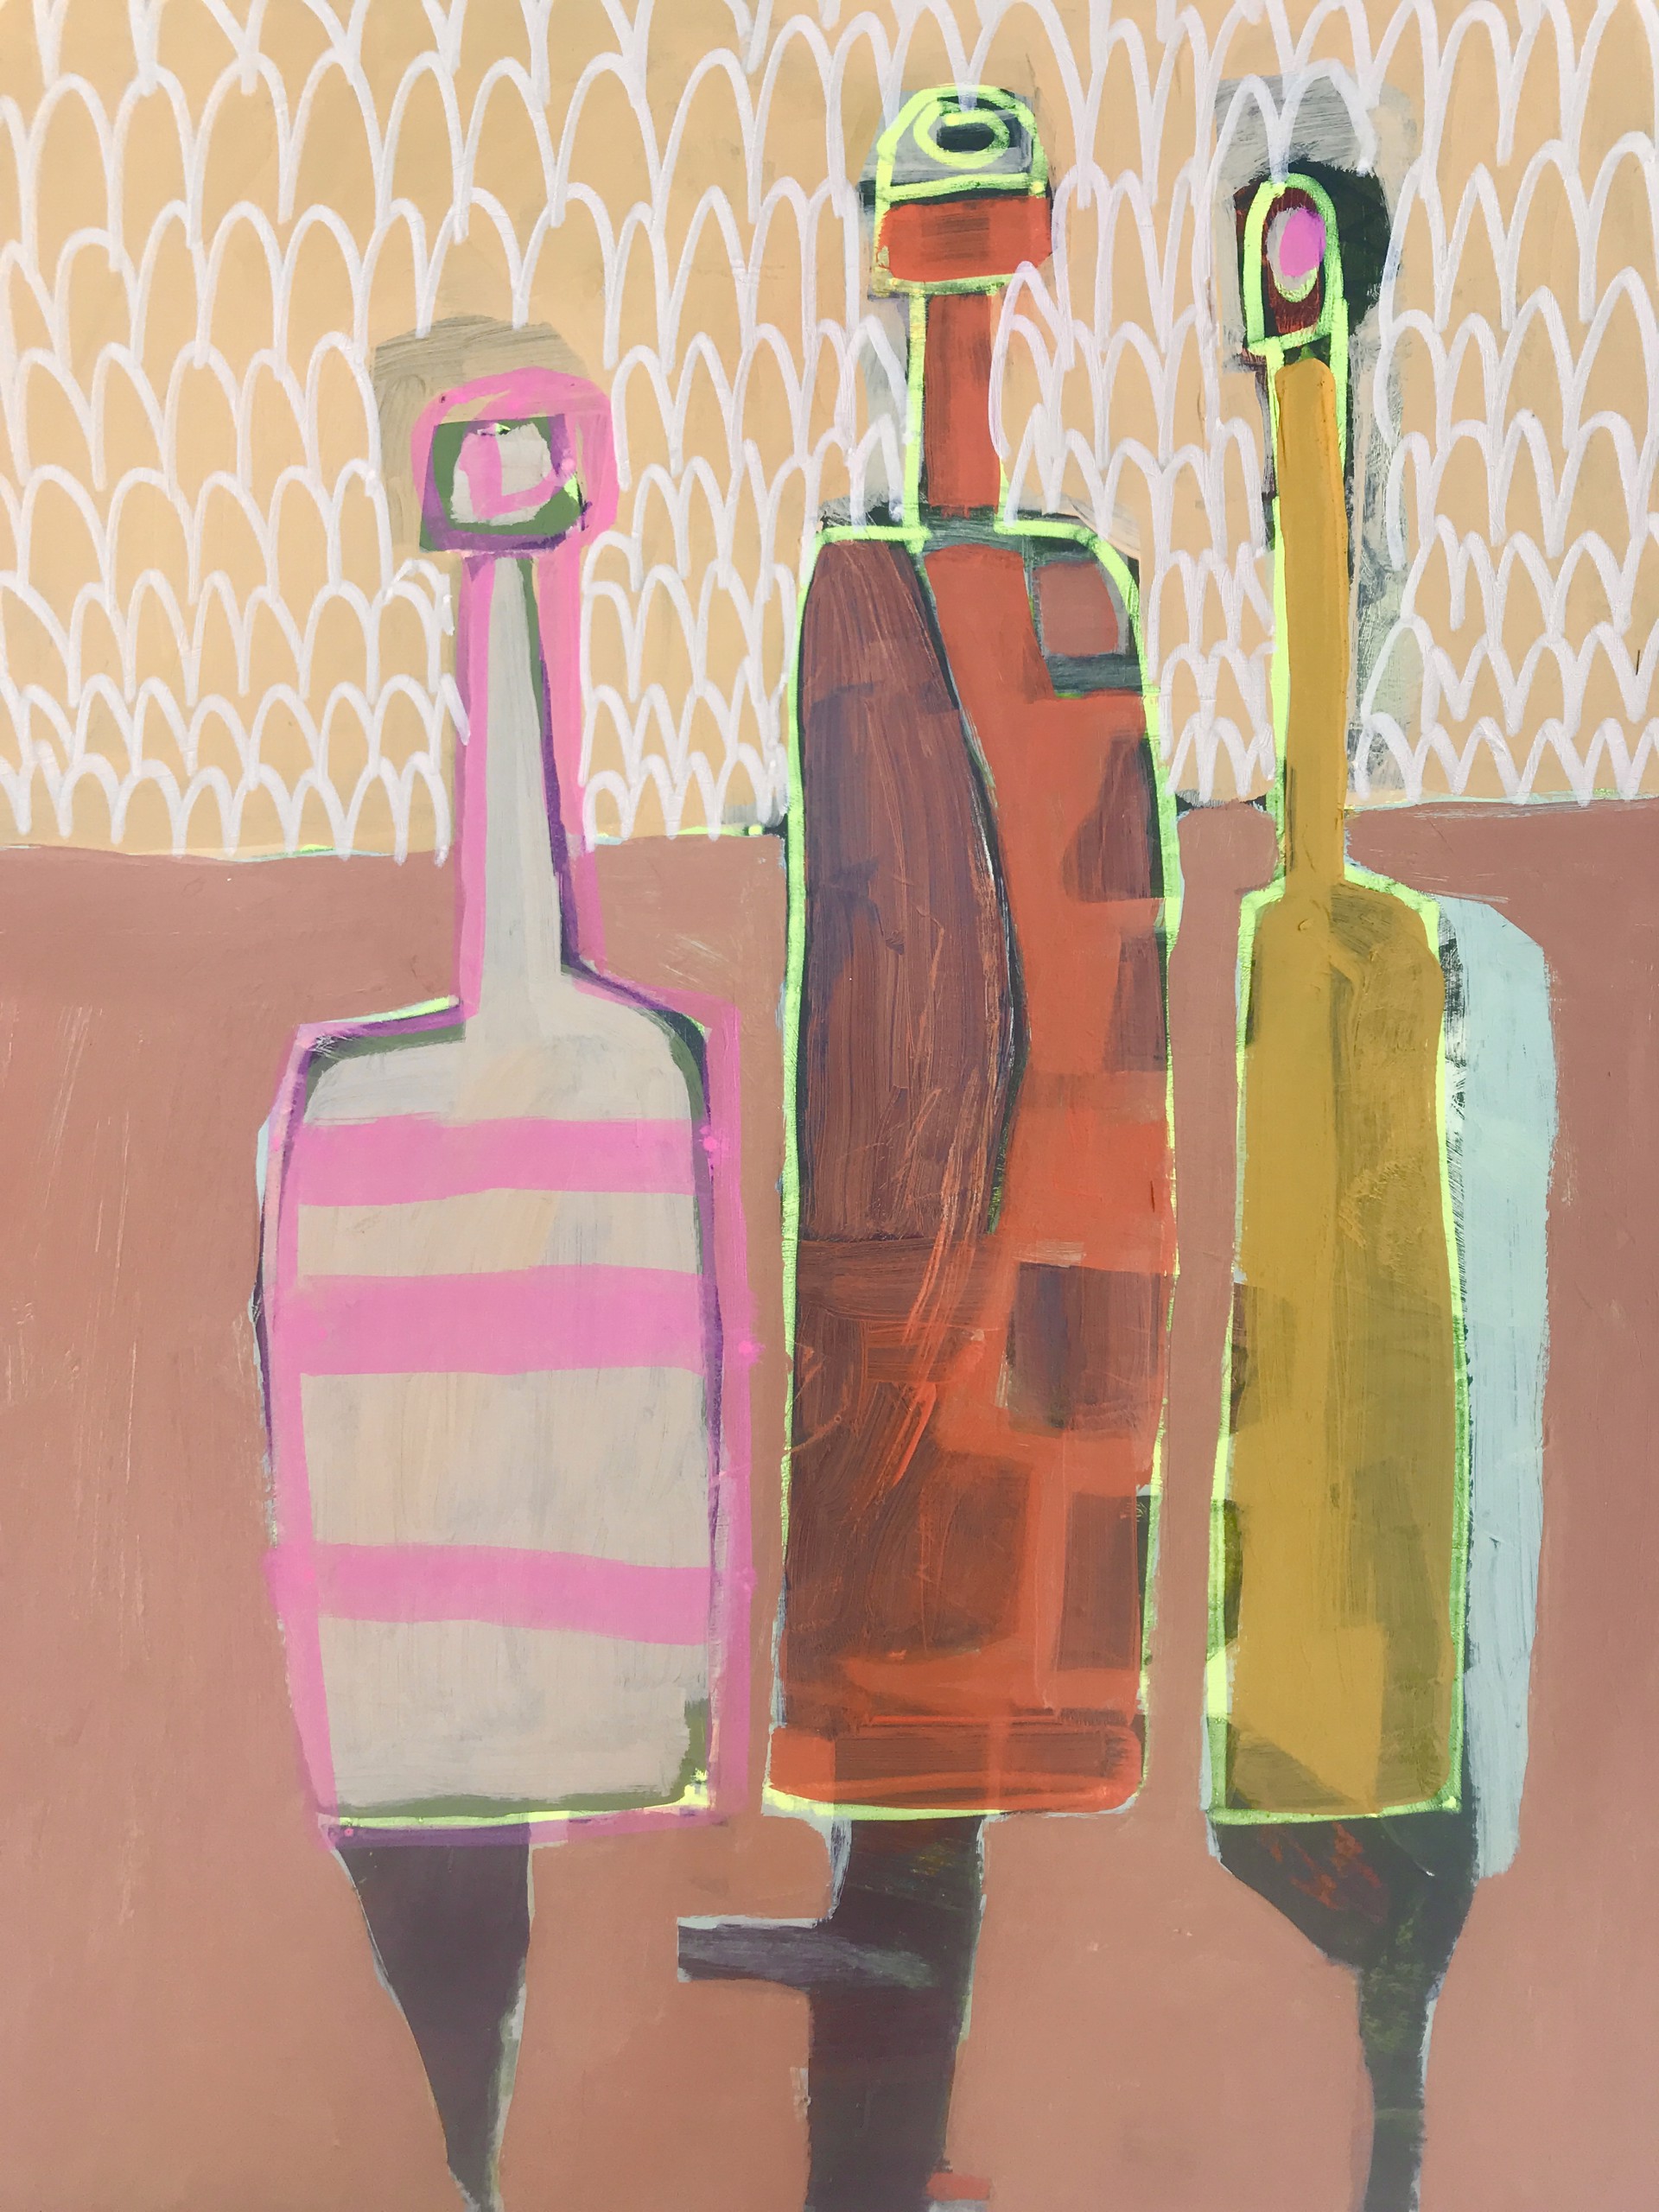 Three Bottles on Tan Table by Rachael Van Dyke